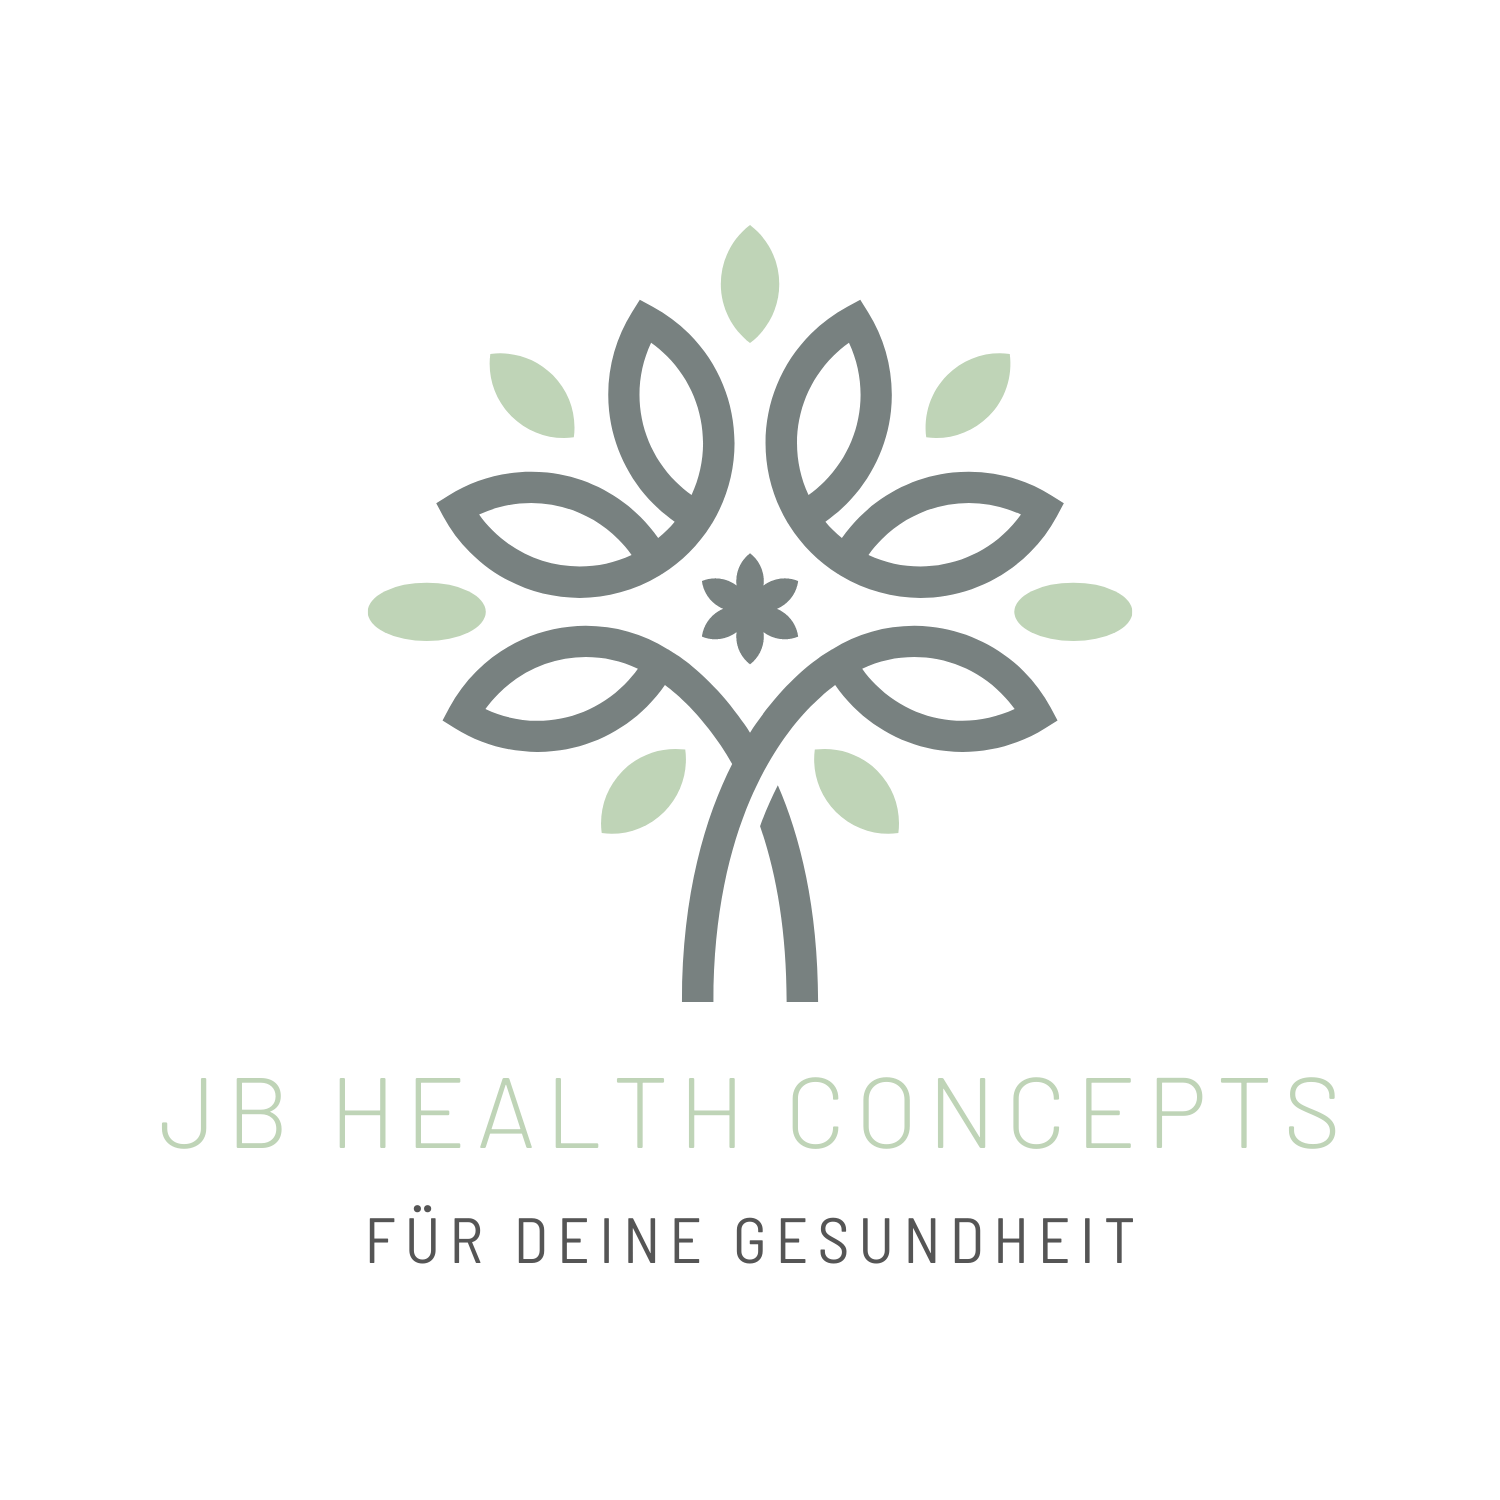 jb health concepts